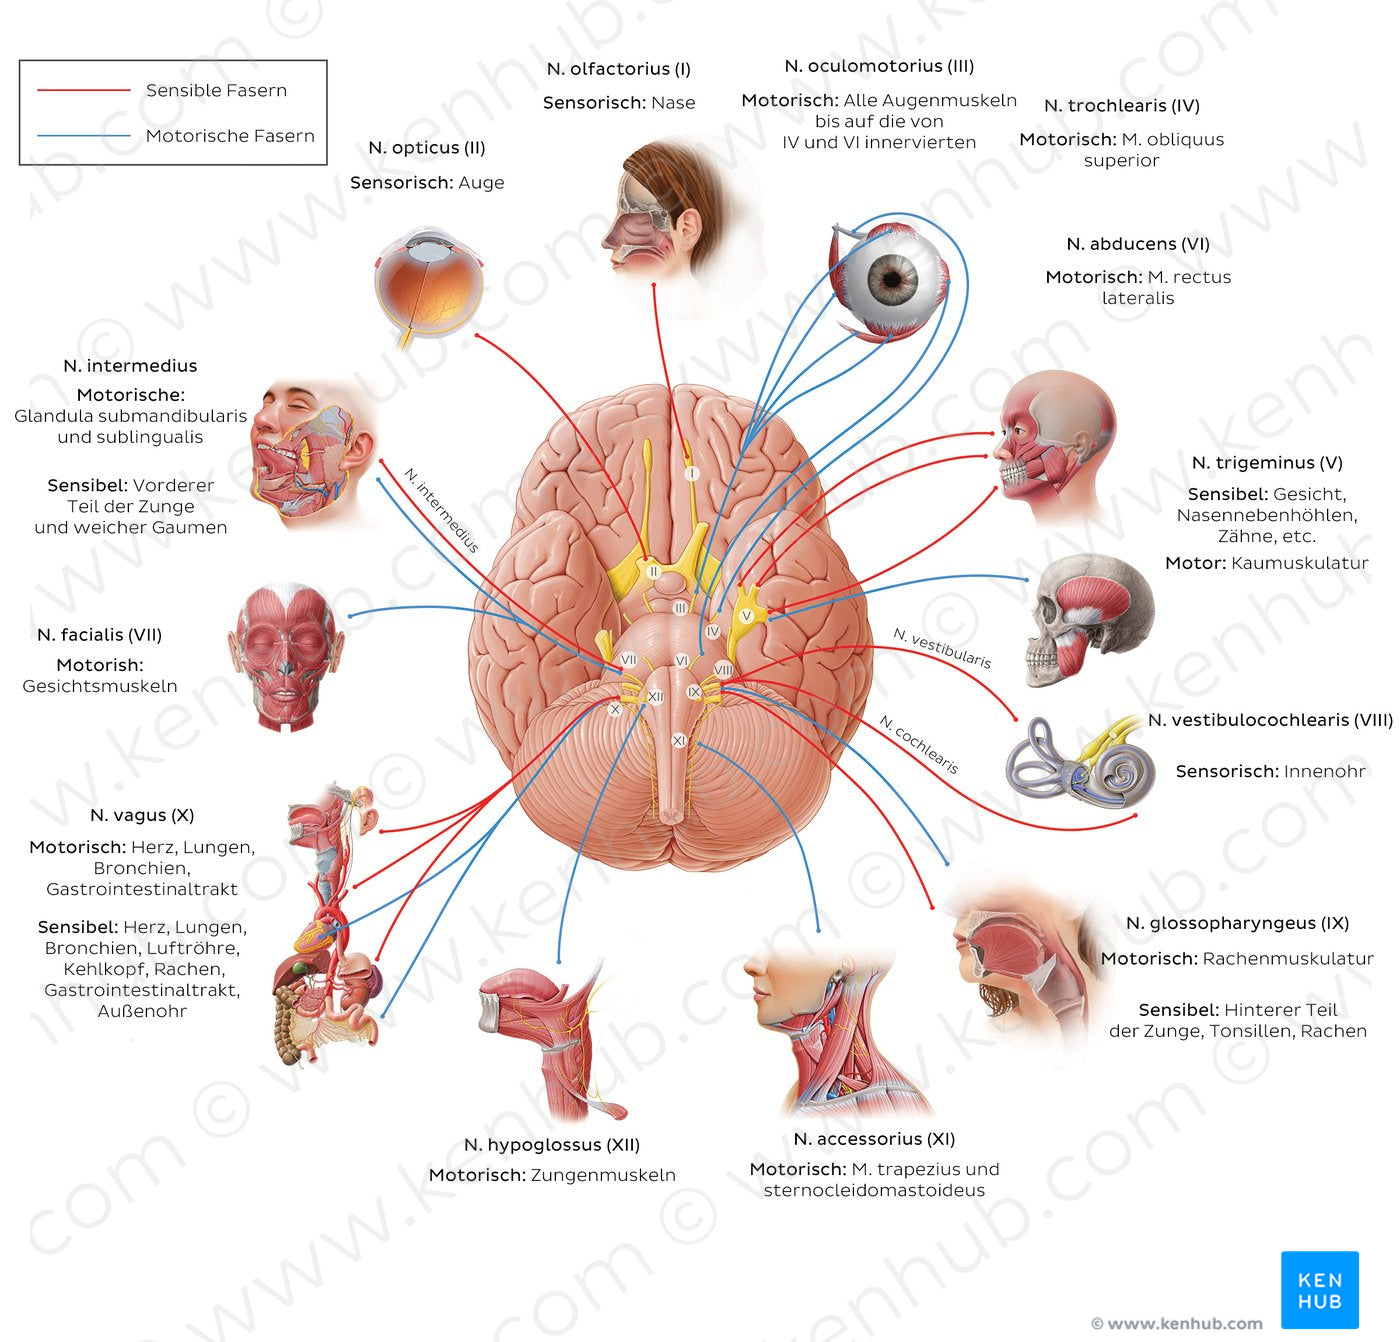 12 cranial nerves (diagram) (German)